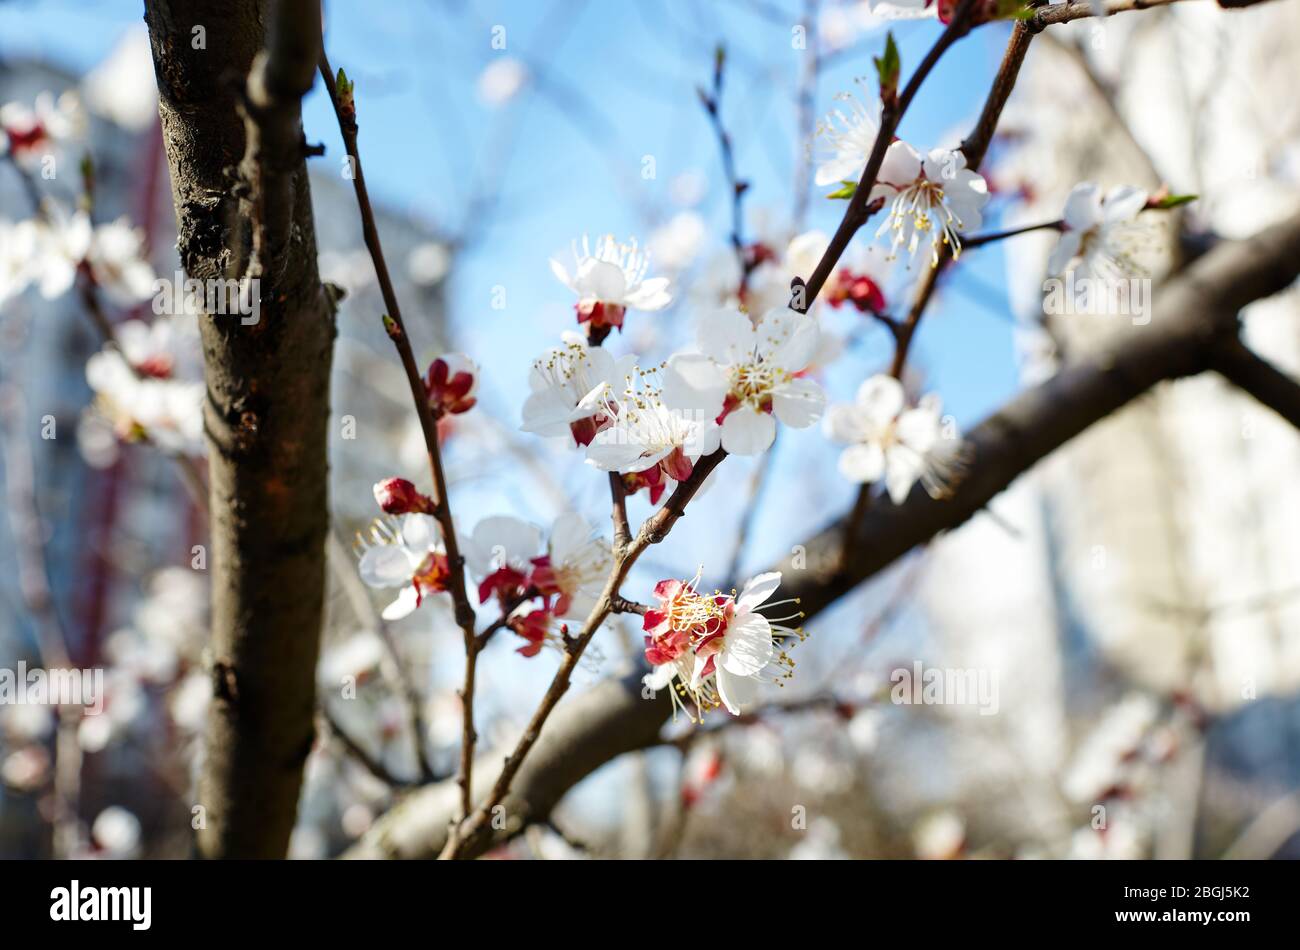 Belle fleur d'abricot blanc.arbre d'abricot fleuri.fond de printemps frais sur la nature à l'extérieur Banque D'Images